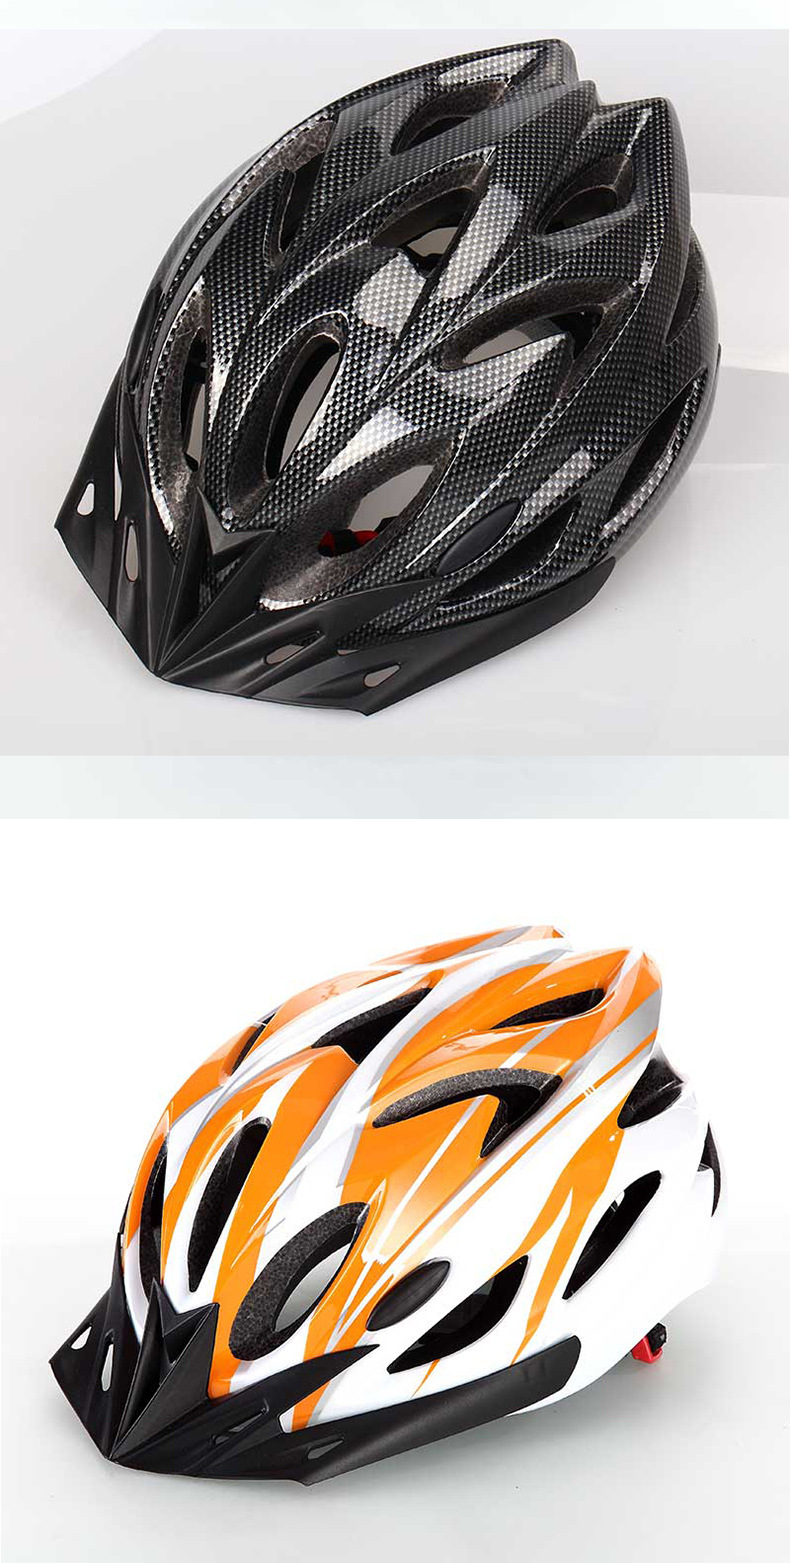 厂家直销BICYCLEV一体成型头盔 自行车头盔 骑行头盔 山地车头盔示例图8